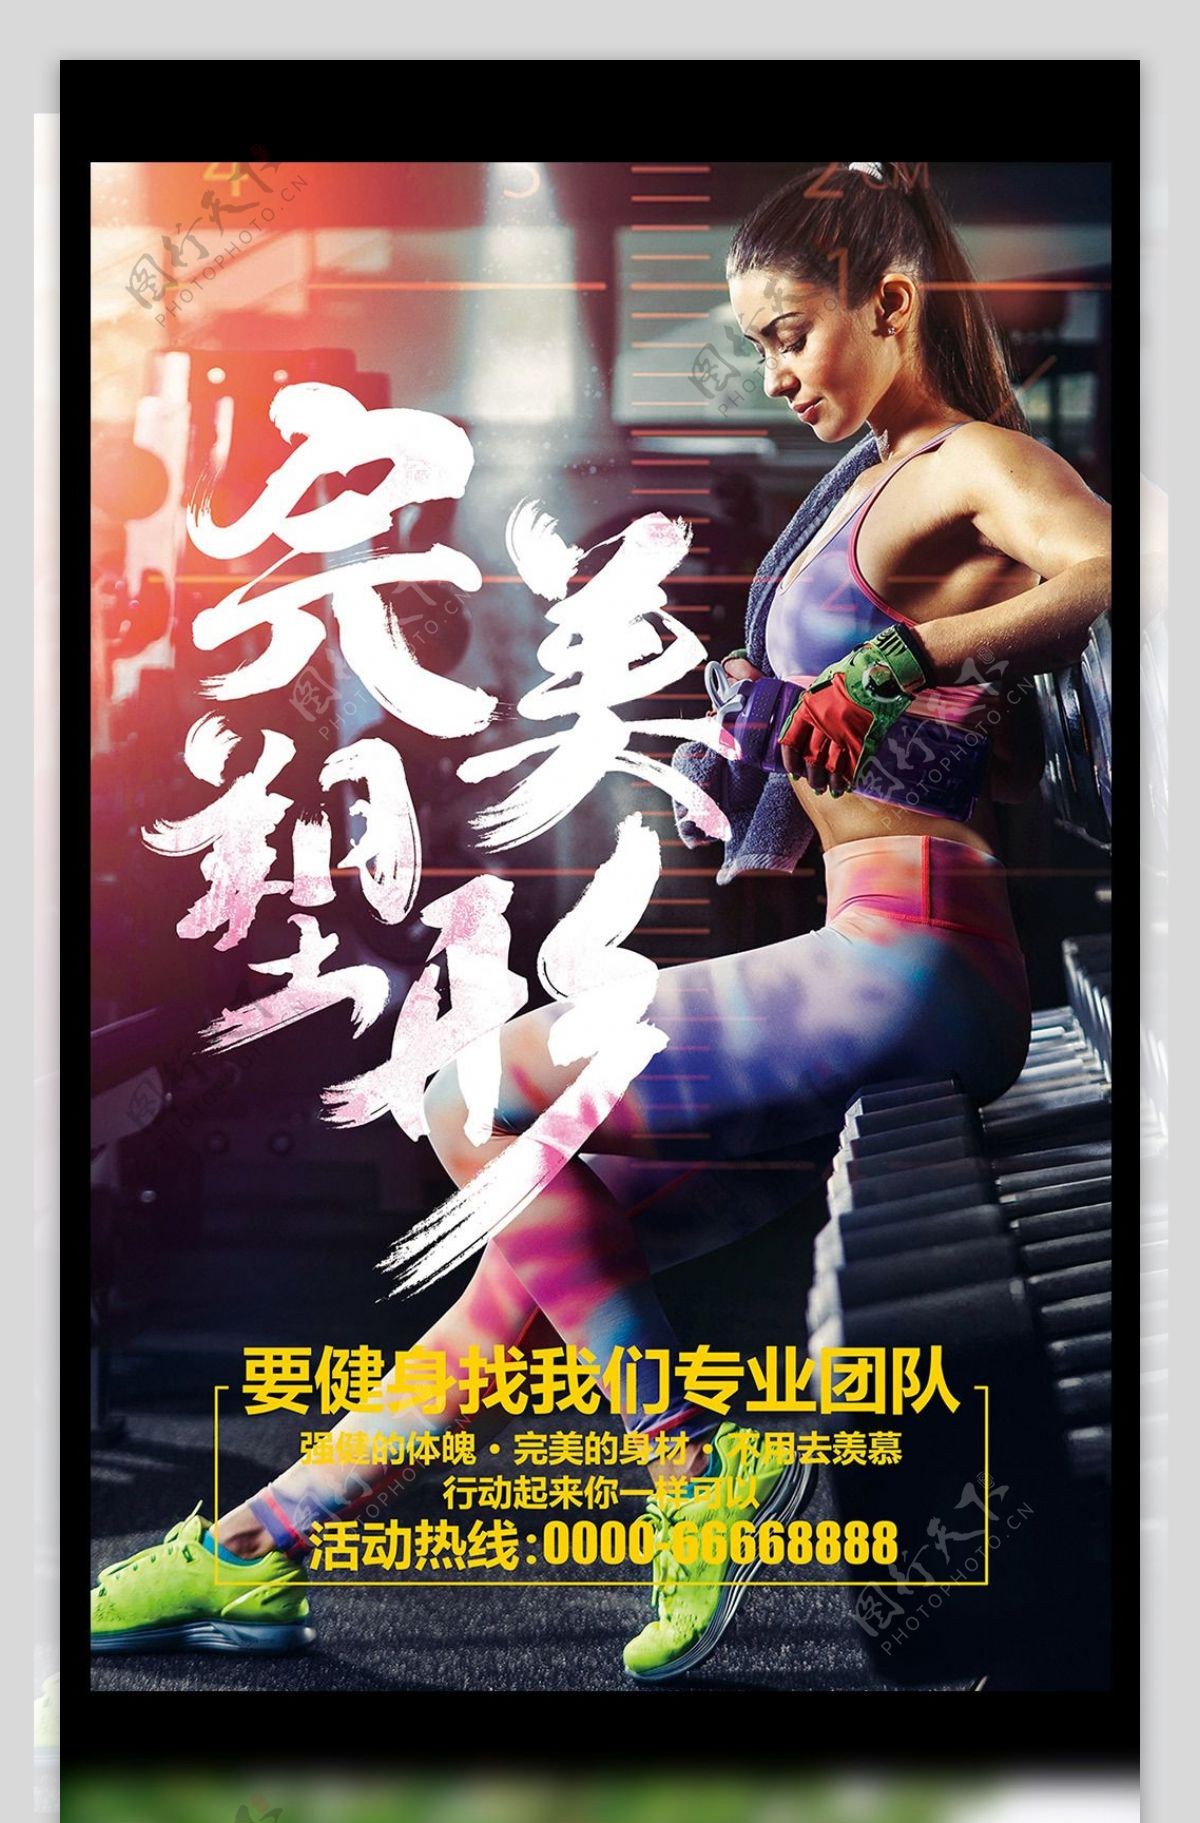 多彩炫酷体育健身运动减肥塑型海报模板